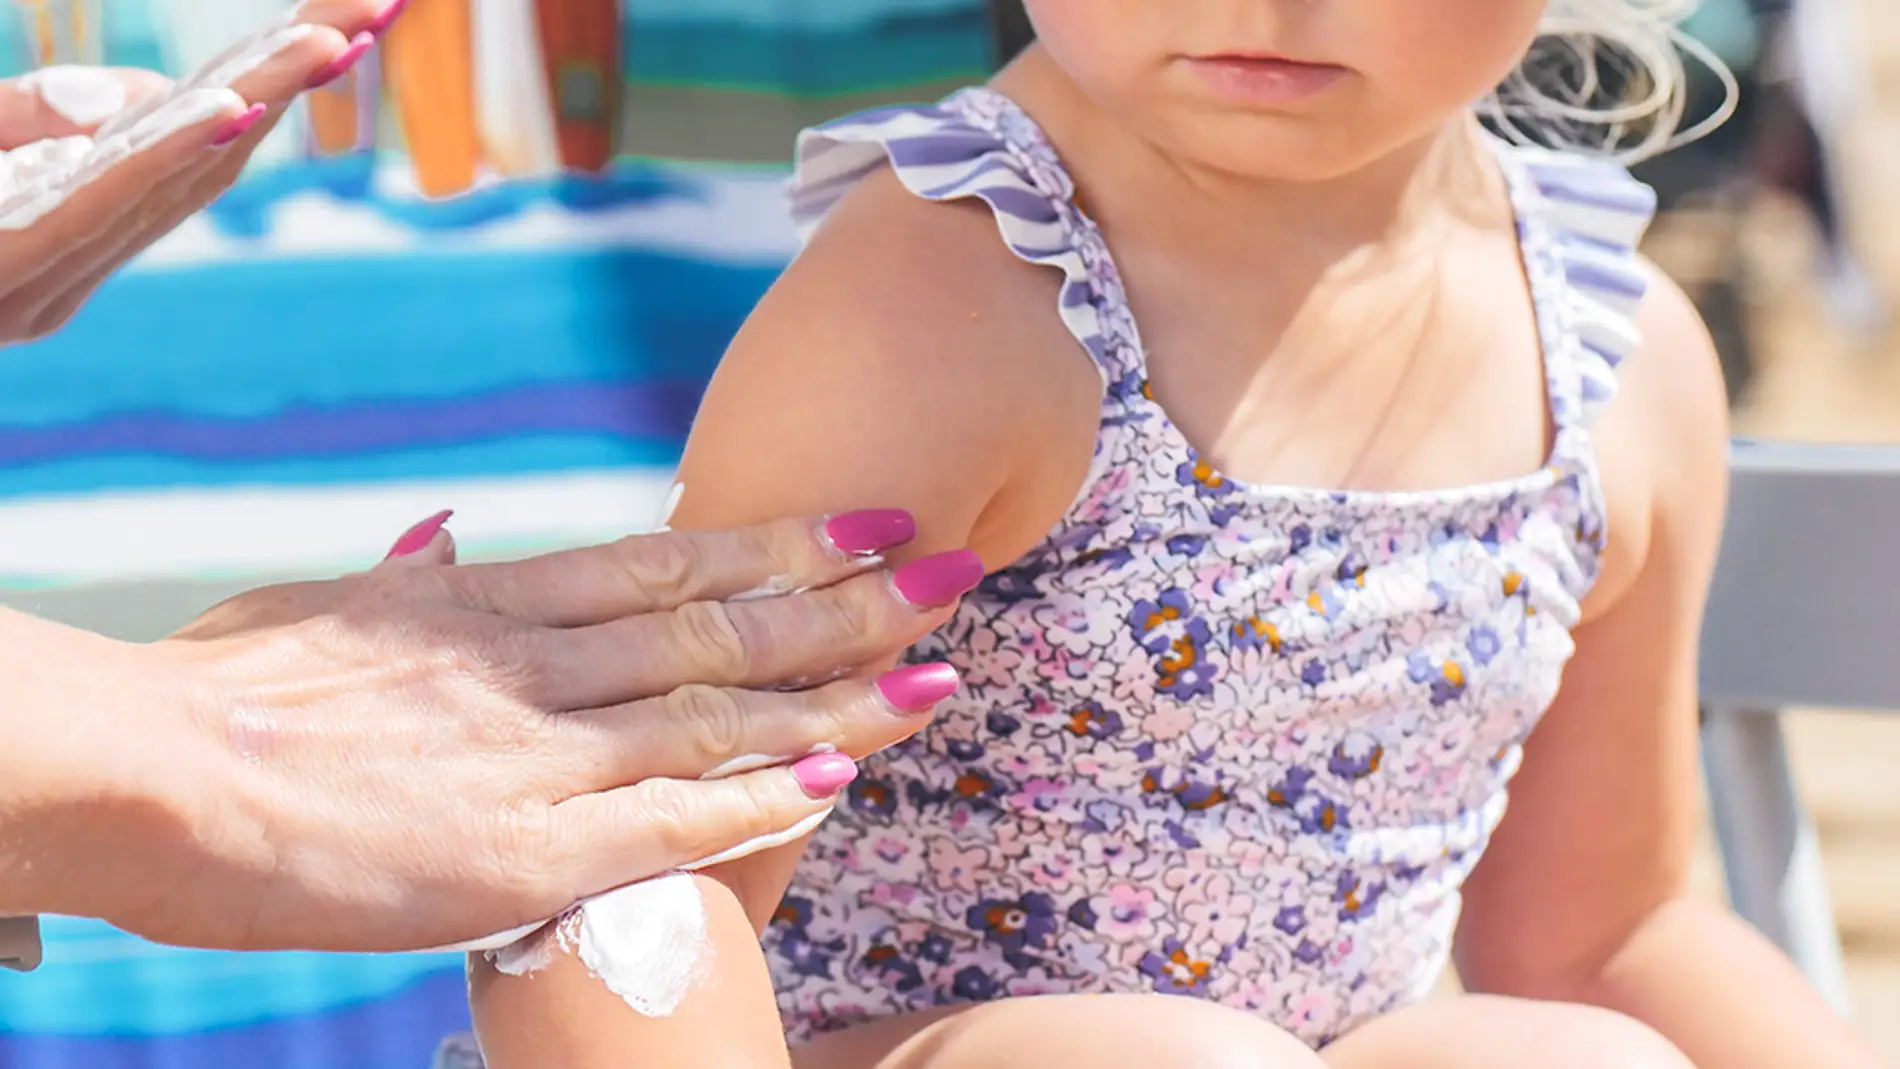 Cómo cuidar y proteger del sol la piel de los niños este verano 